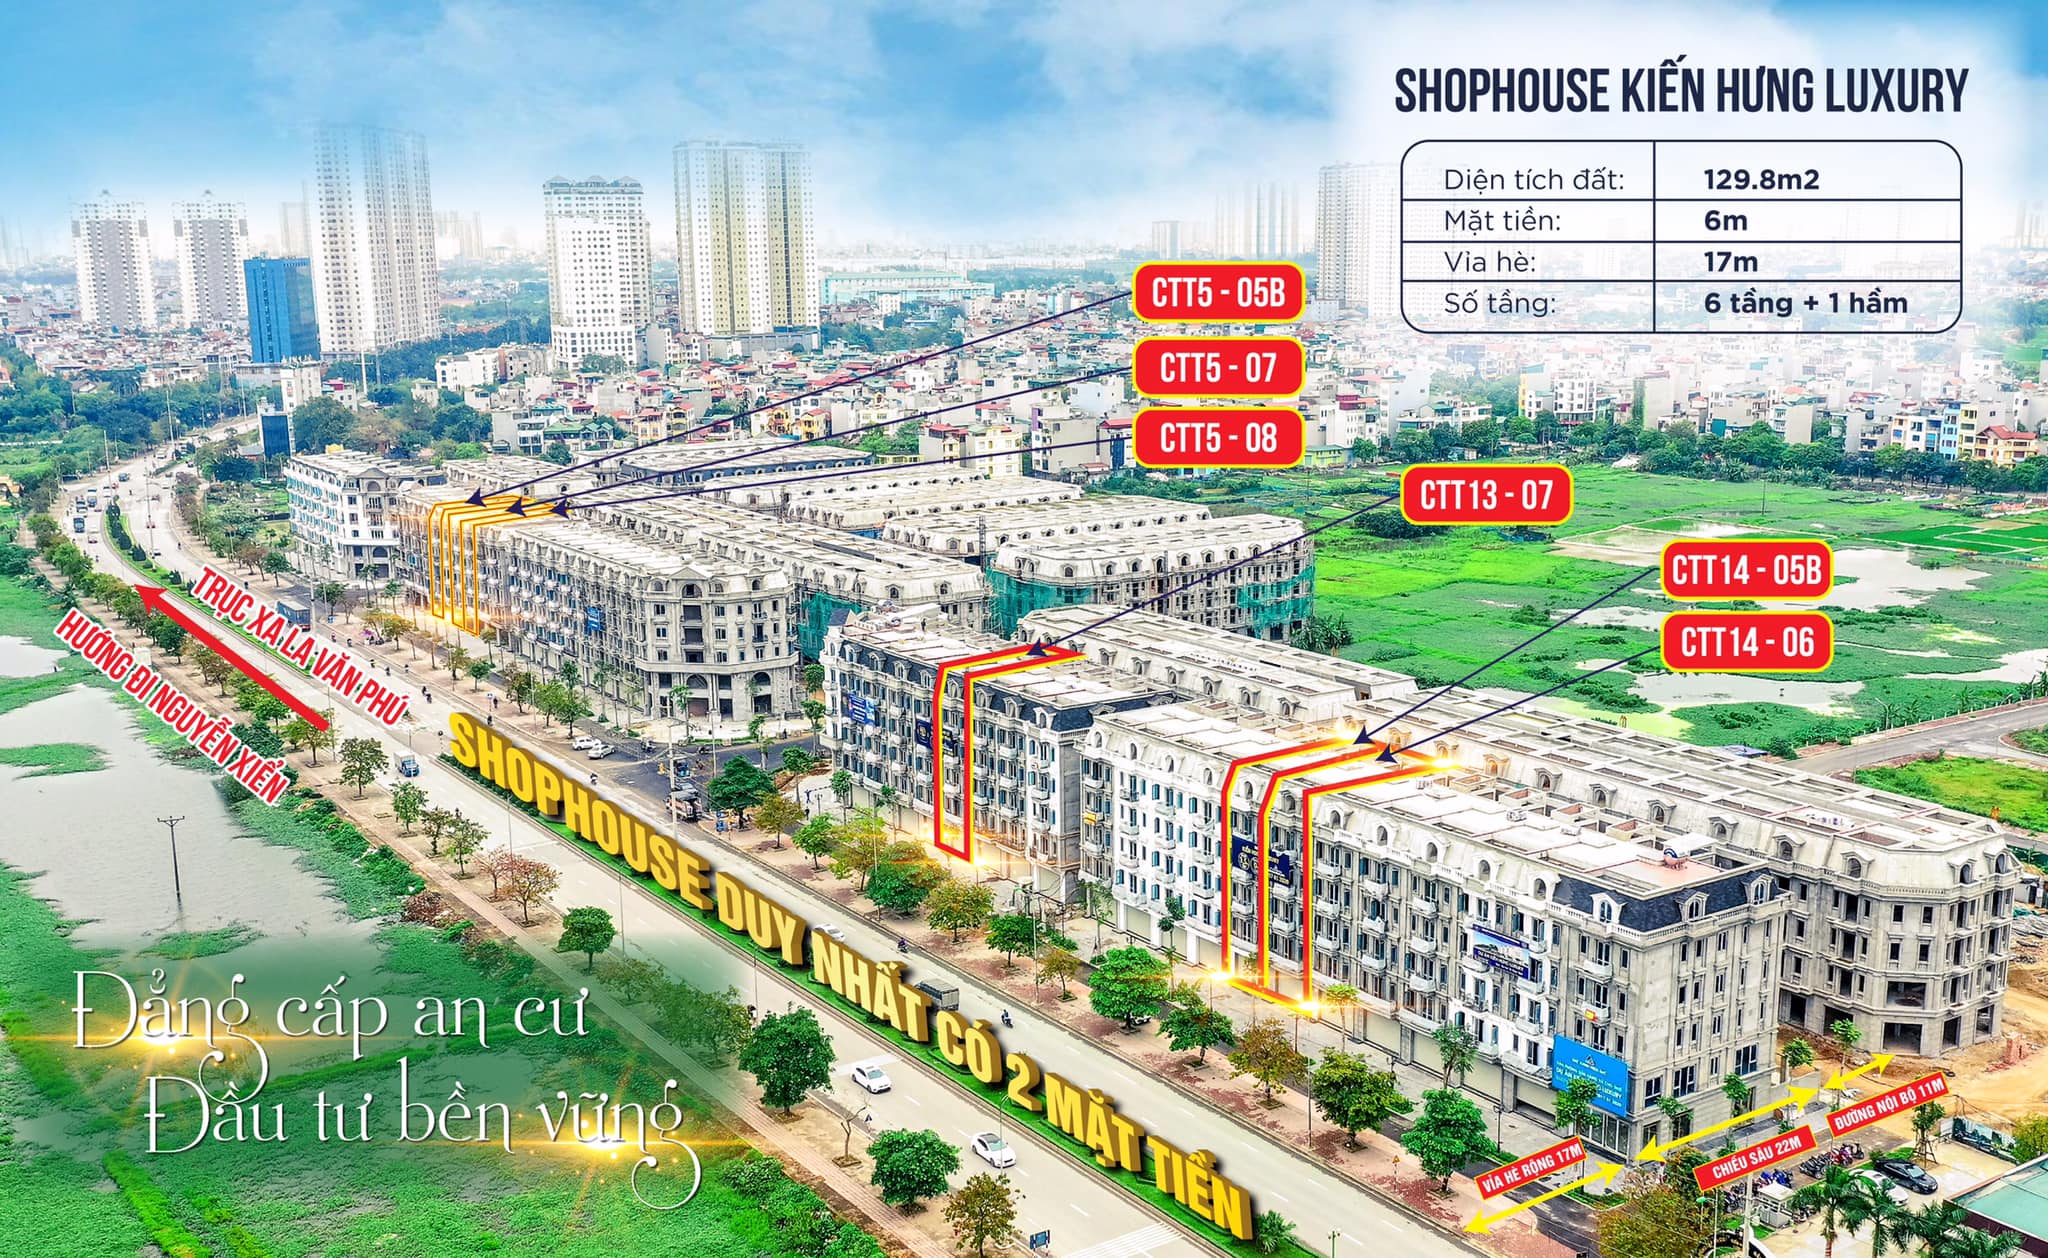 Shophouse Dự án Kiến Hưng Luxury 129,8m2 hoàn thiện 6 tầng + 1 hầm, 2 mặt tiền